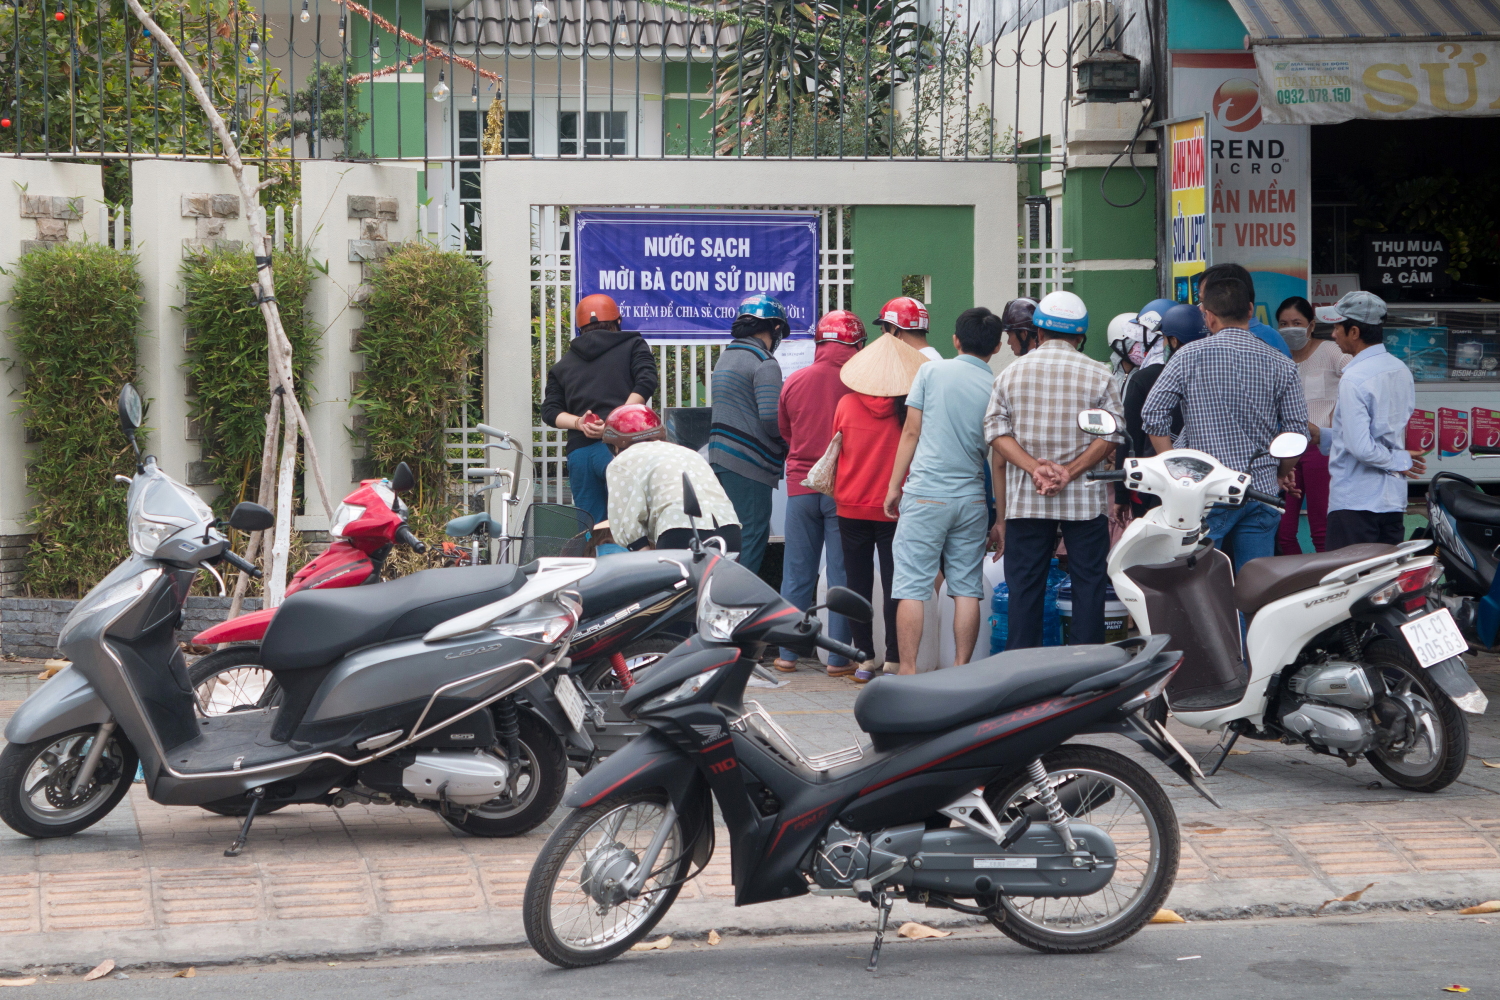 Người dân ở phường Phú Tân, TP. Bến Tre tự nguyện cung cấp nước sạch đã qua xử lý cho bà con sử dụng.